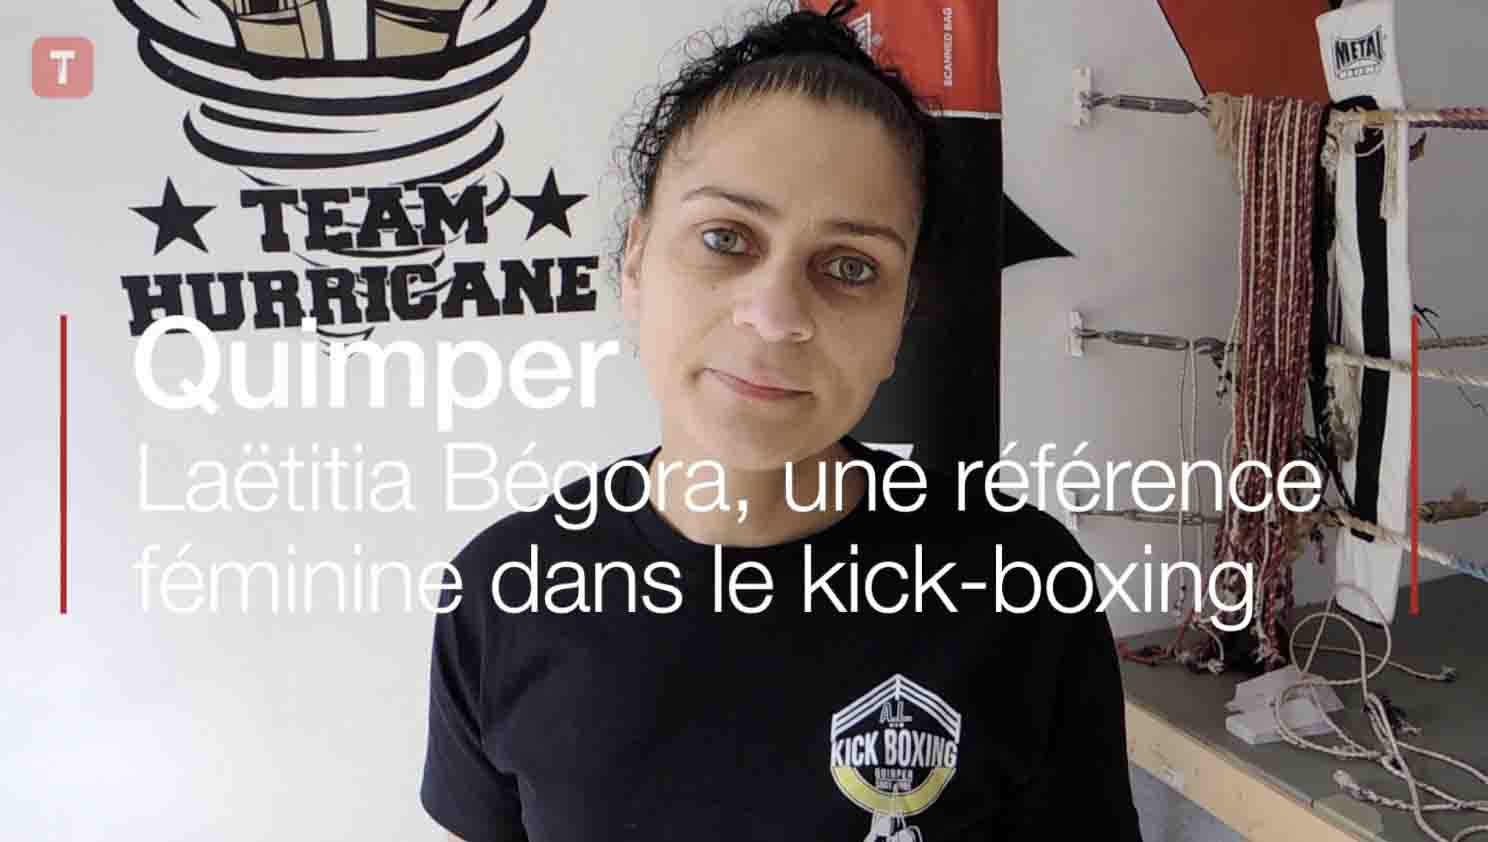 Quimper. Laëtitia Bégora, une référence féminine dans le kick-boxing (Le Télégramme)